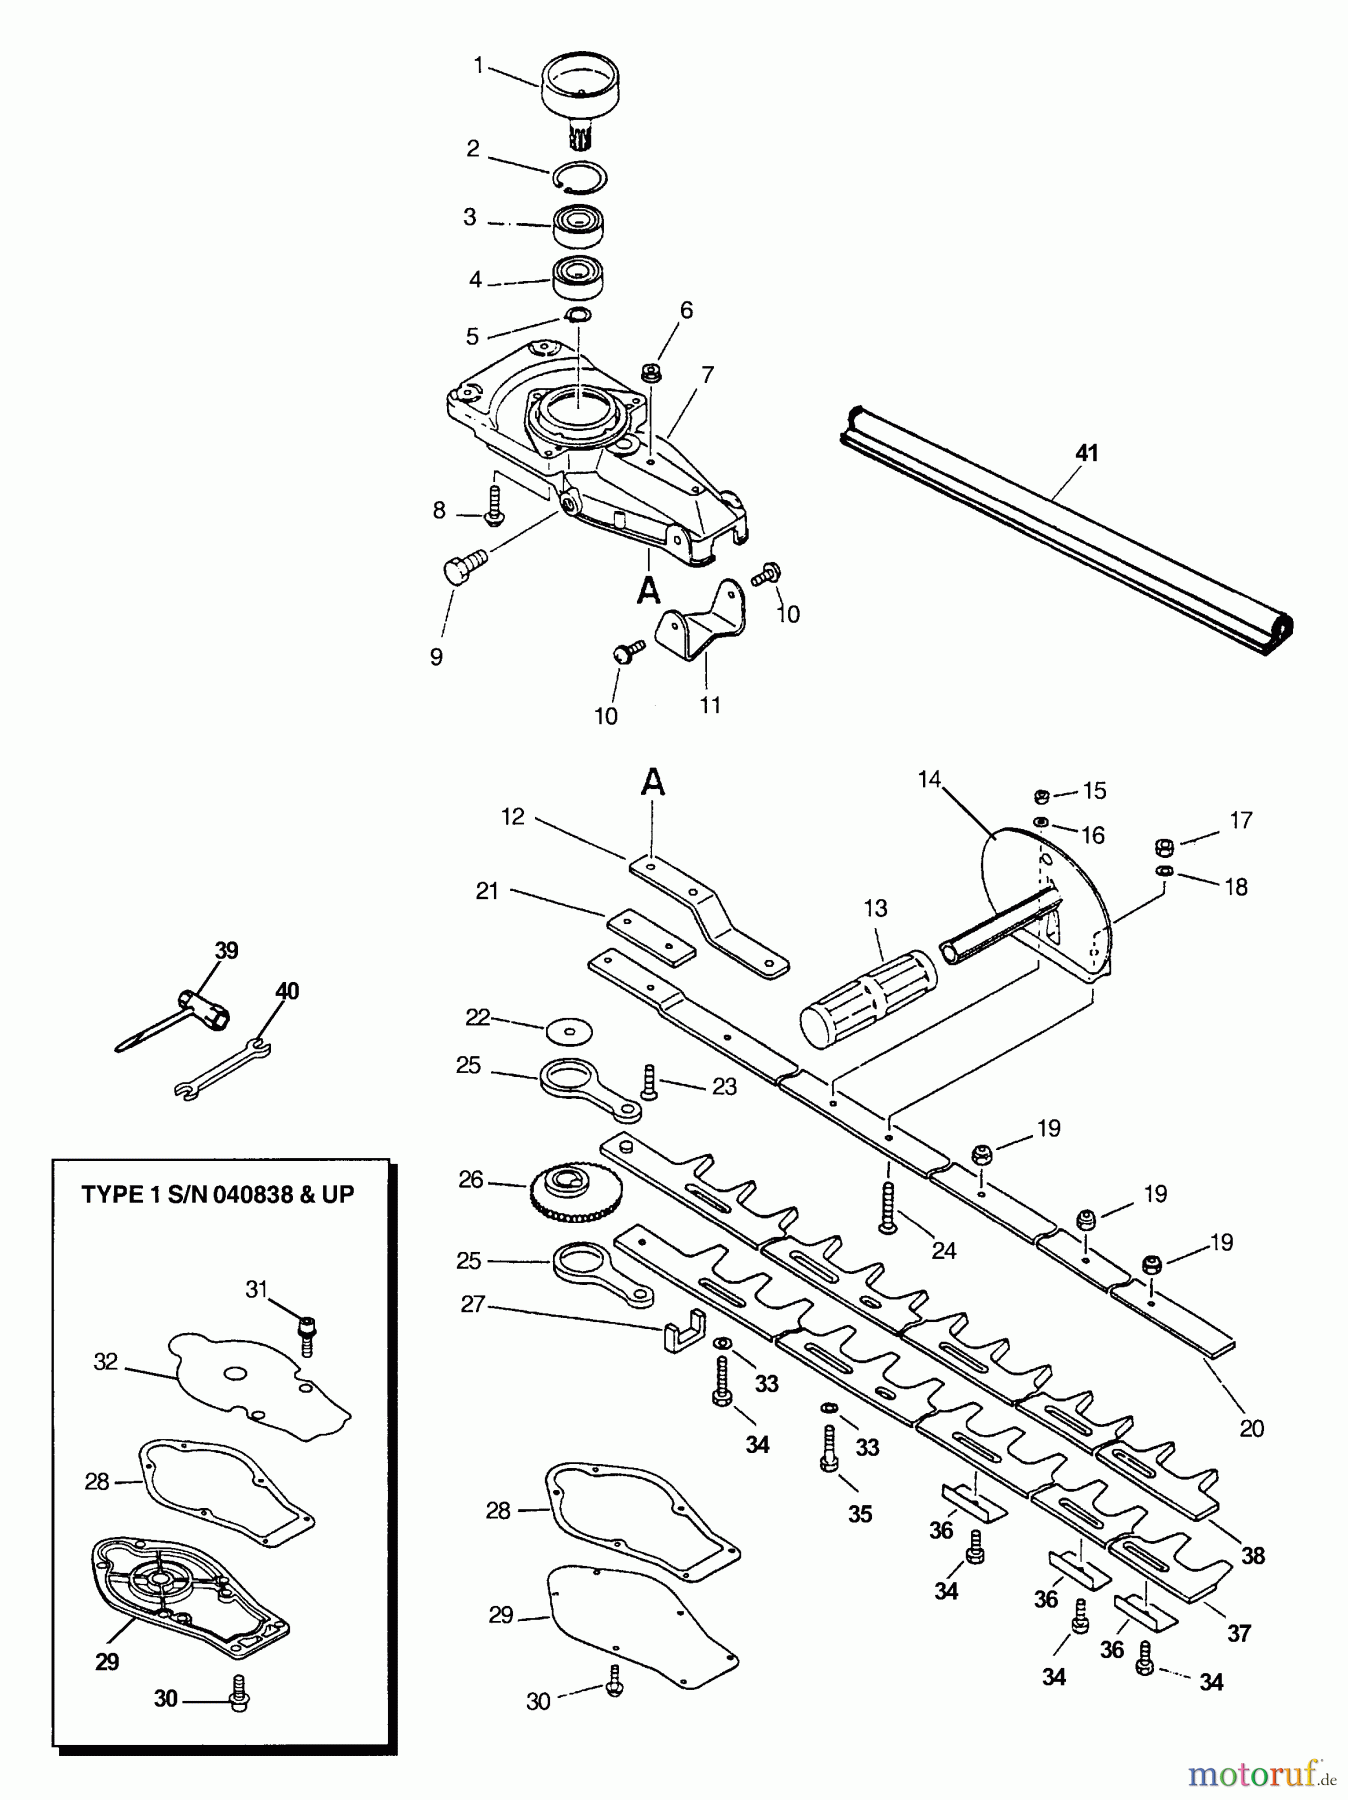  Echo Heckenscheren HC-2000 - Echo Hedge Trimmer (Type 1) Gear Case, Blades, Handle